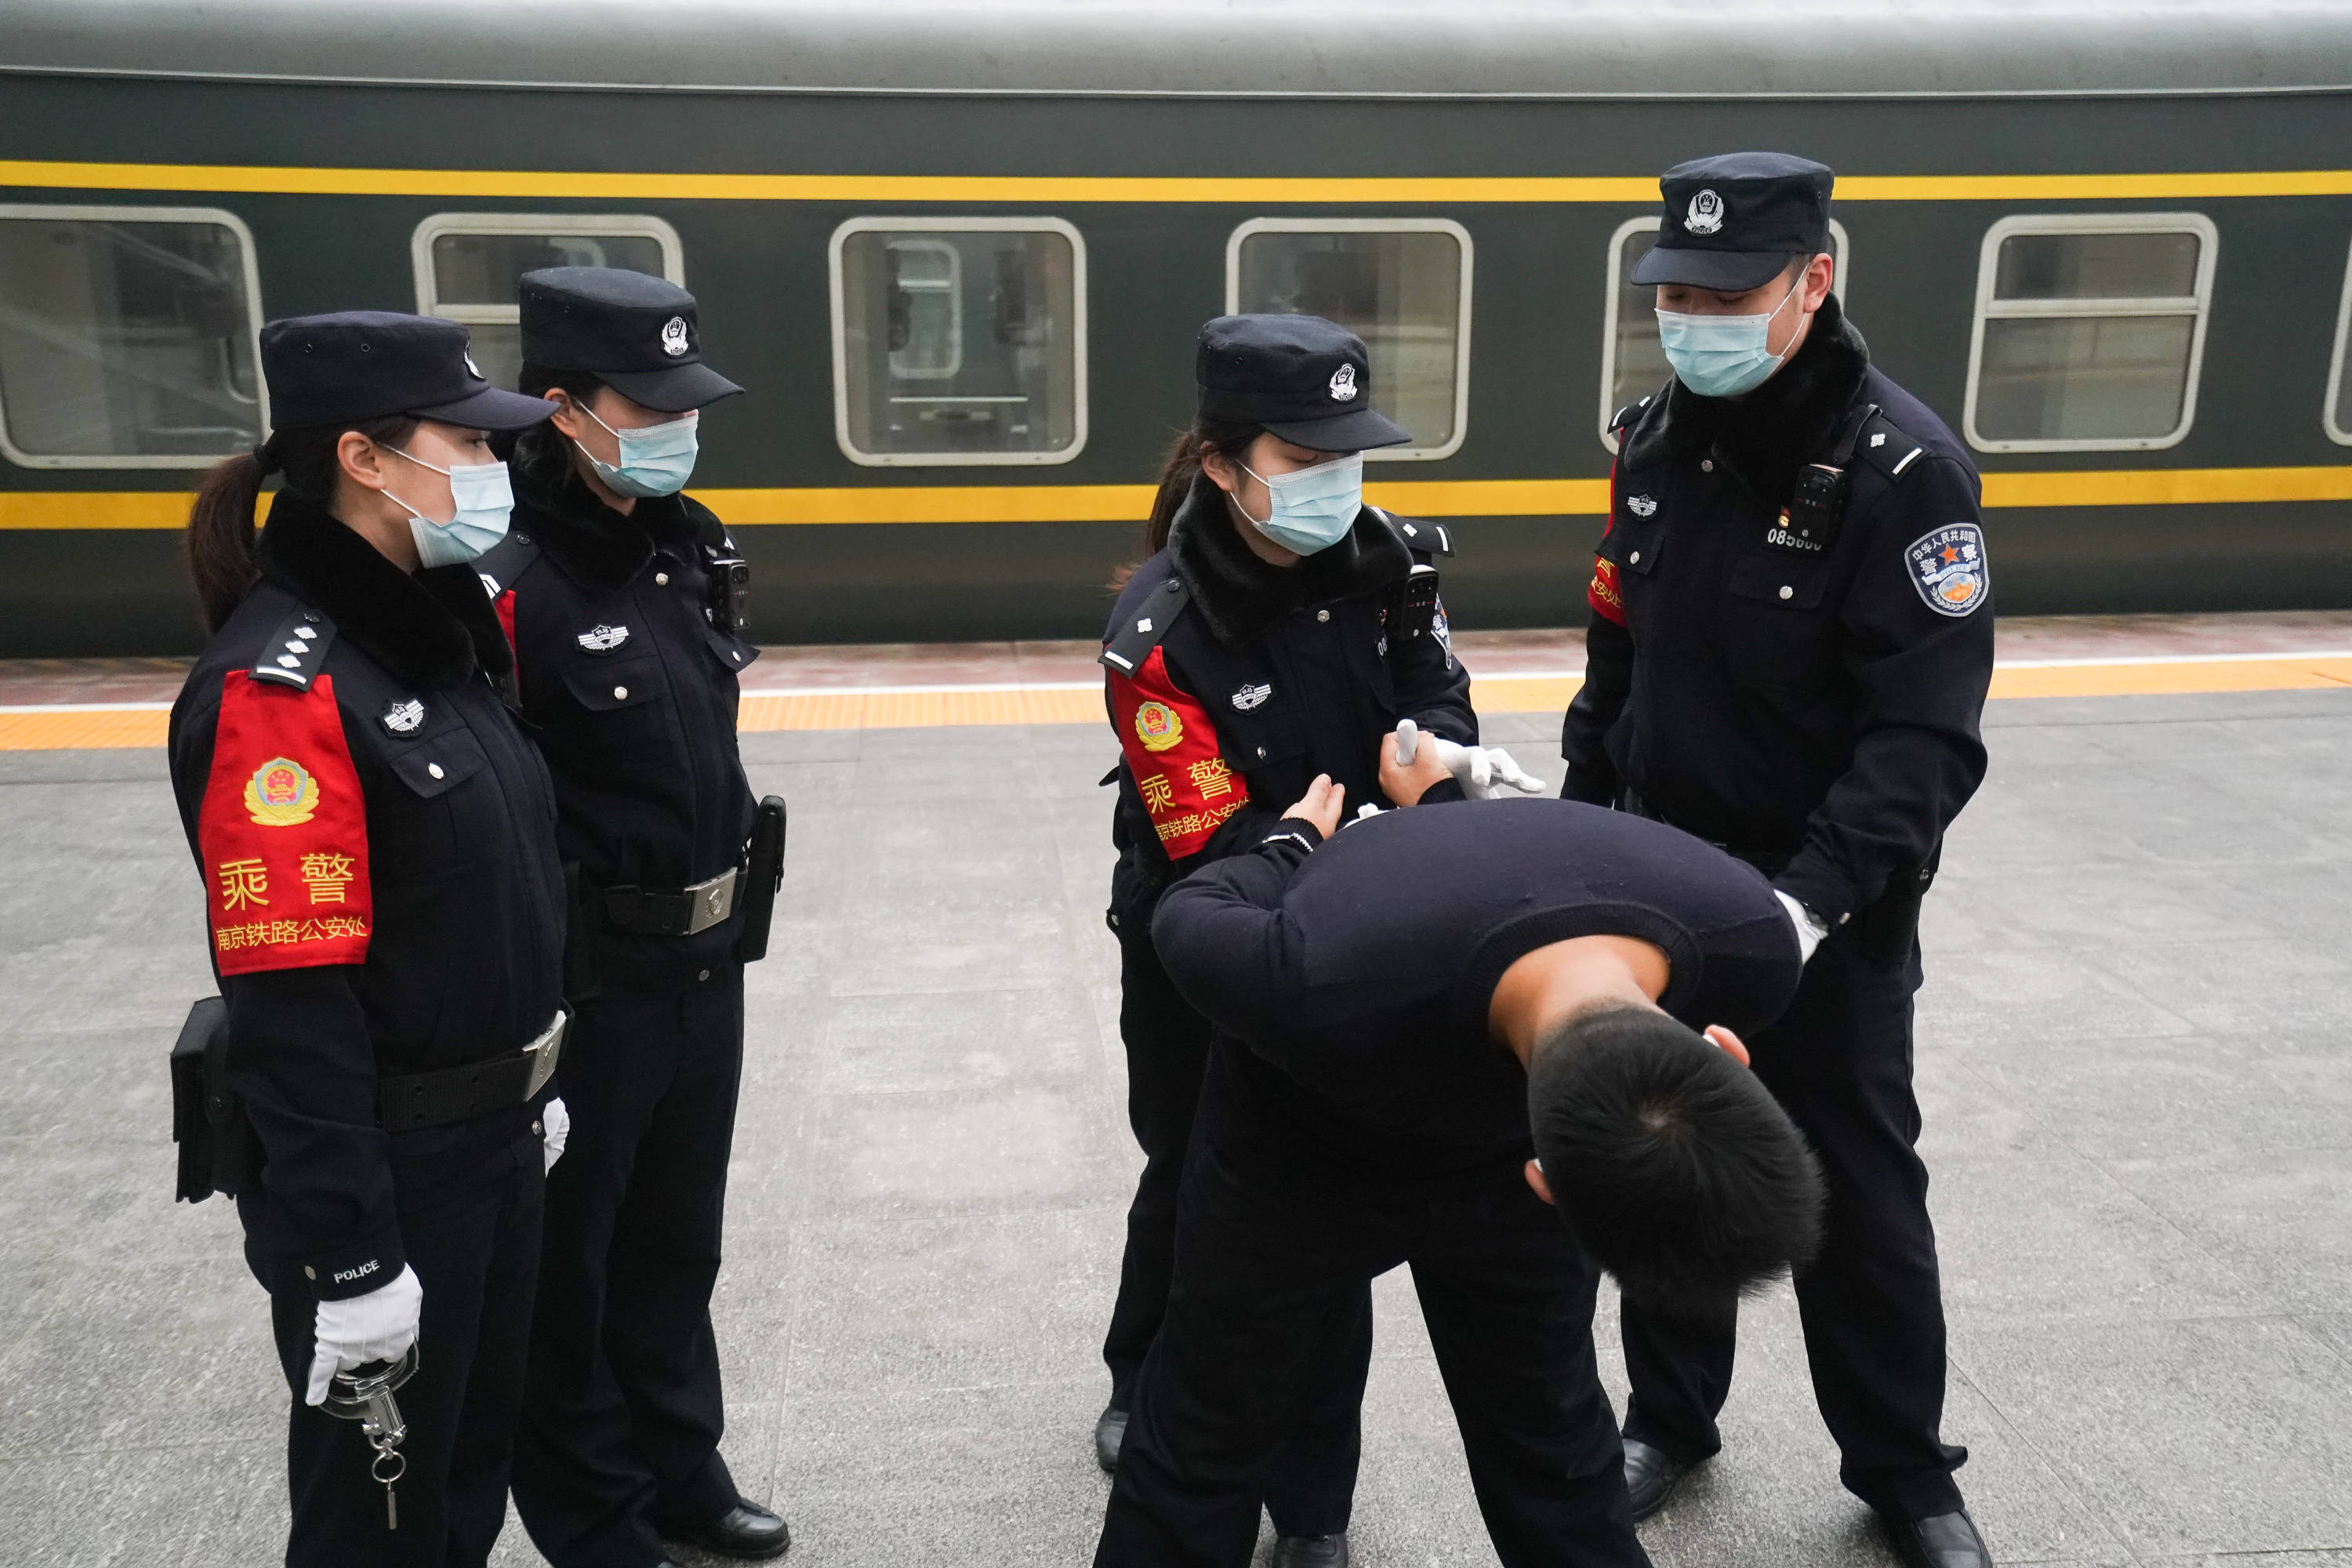 1月26日,在南京站站台,南京铁路公安处乘警支队三大队乘警长石驰(后右